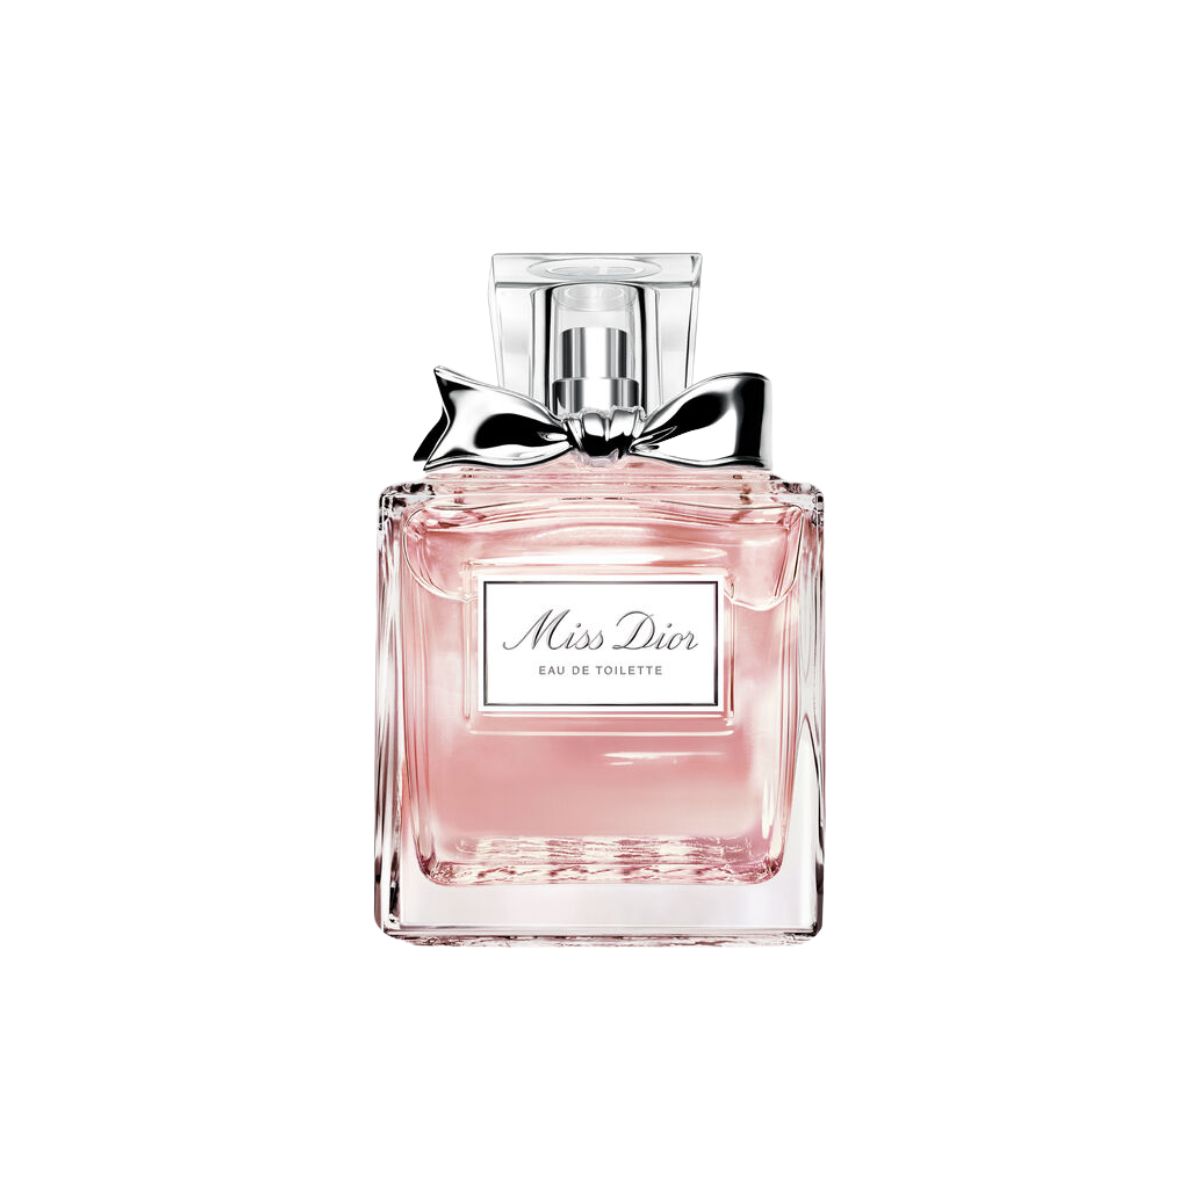 Stor I Klassiske parfumer I Alkestrup guider til dufte kende